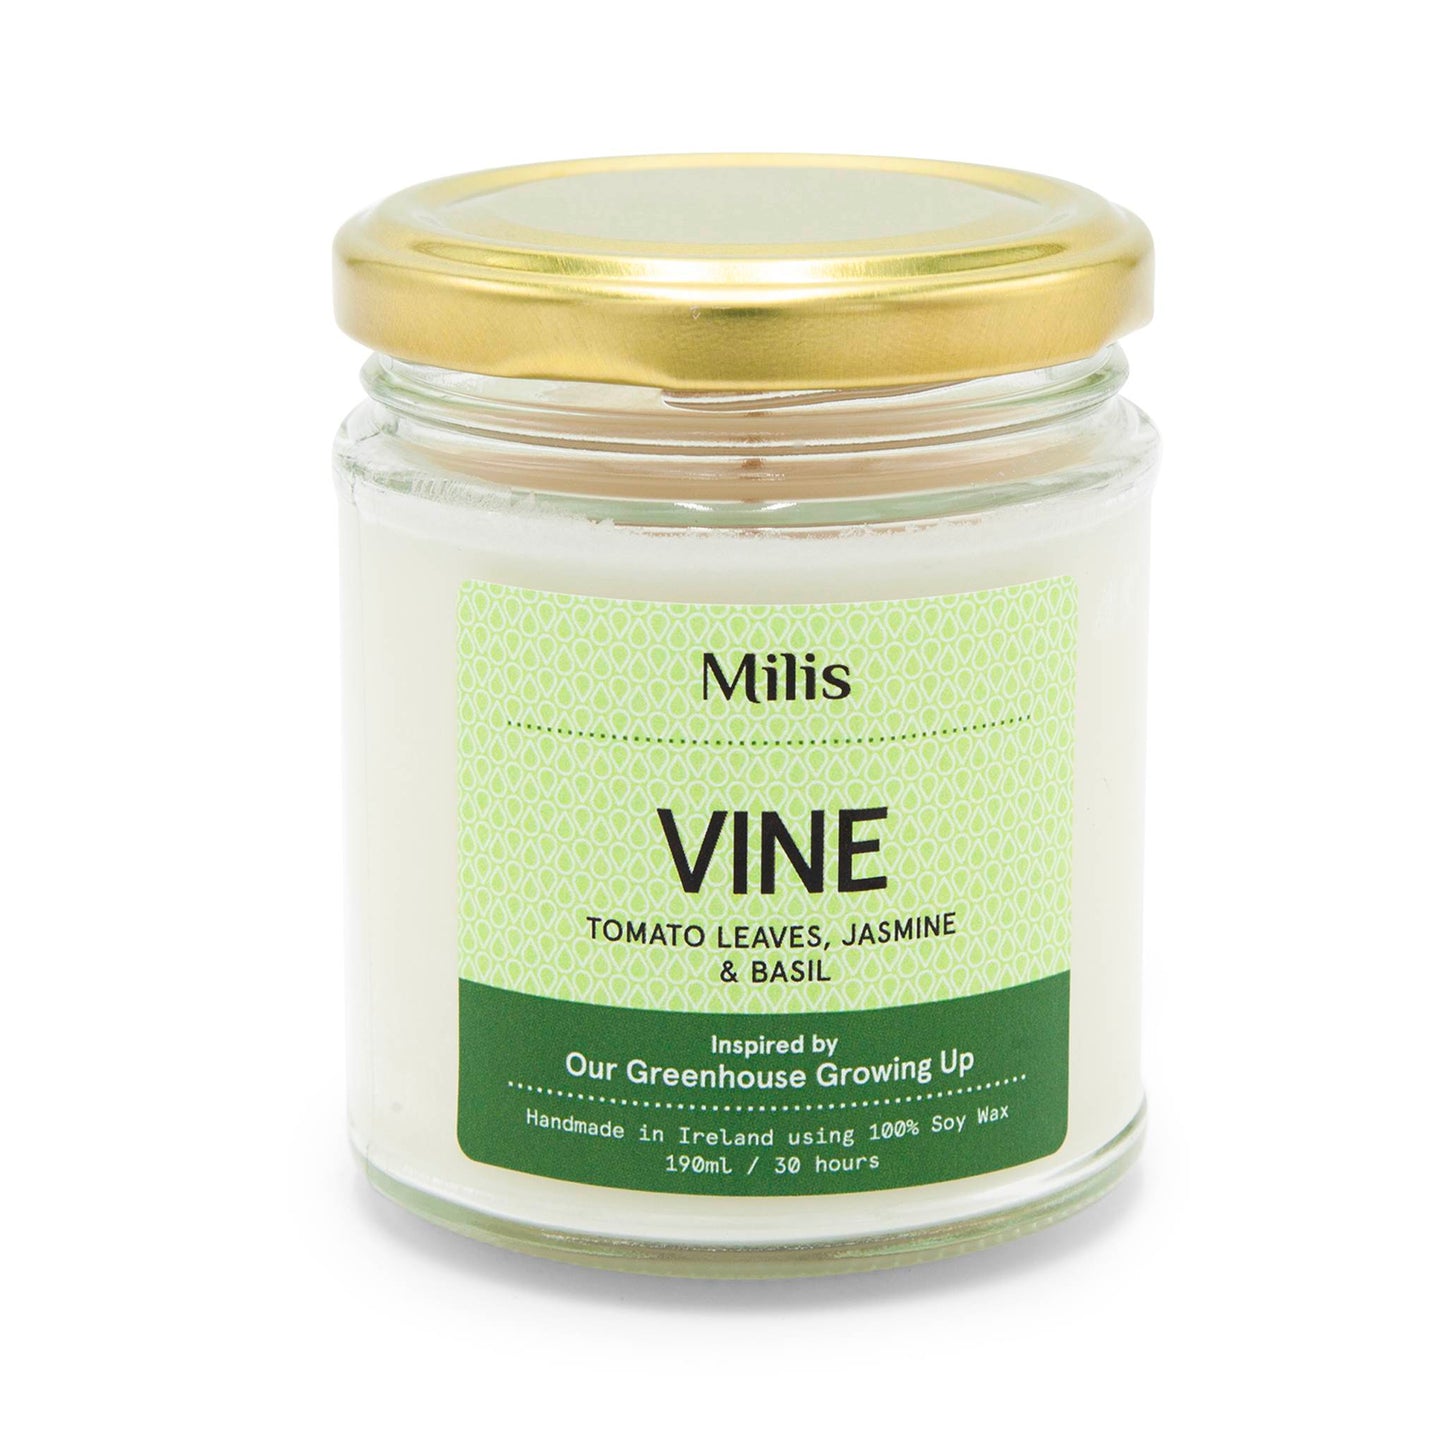 Milis Candles Milis Soy Wax Candle 190g - Vine - Tomato Leaves, Basil & Jasmine